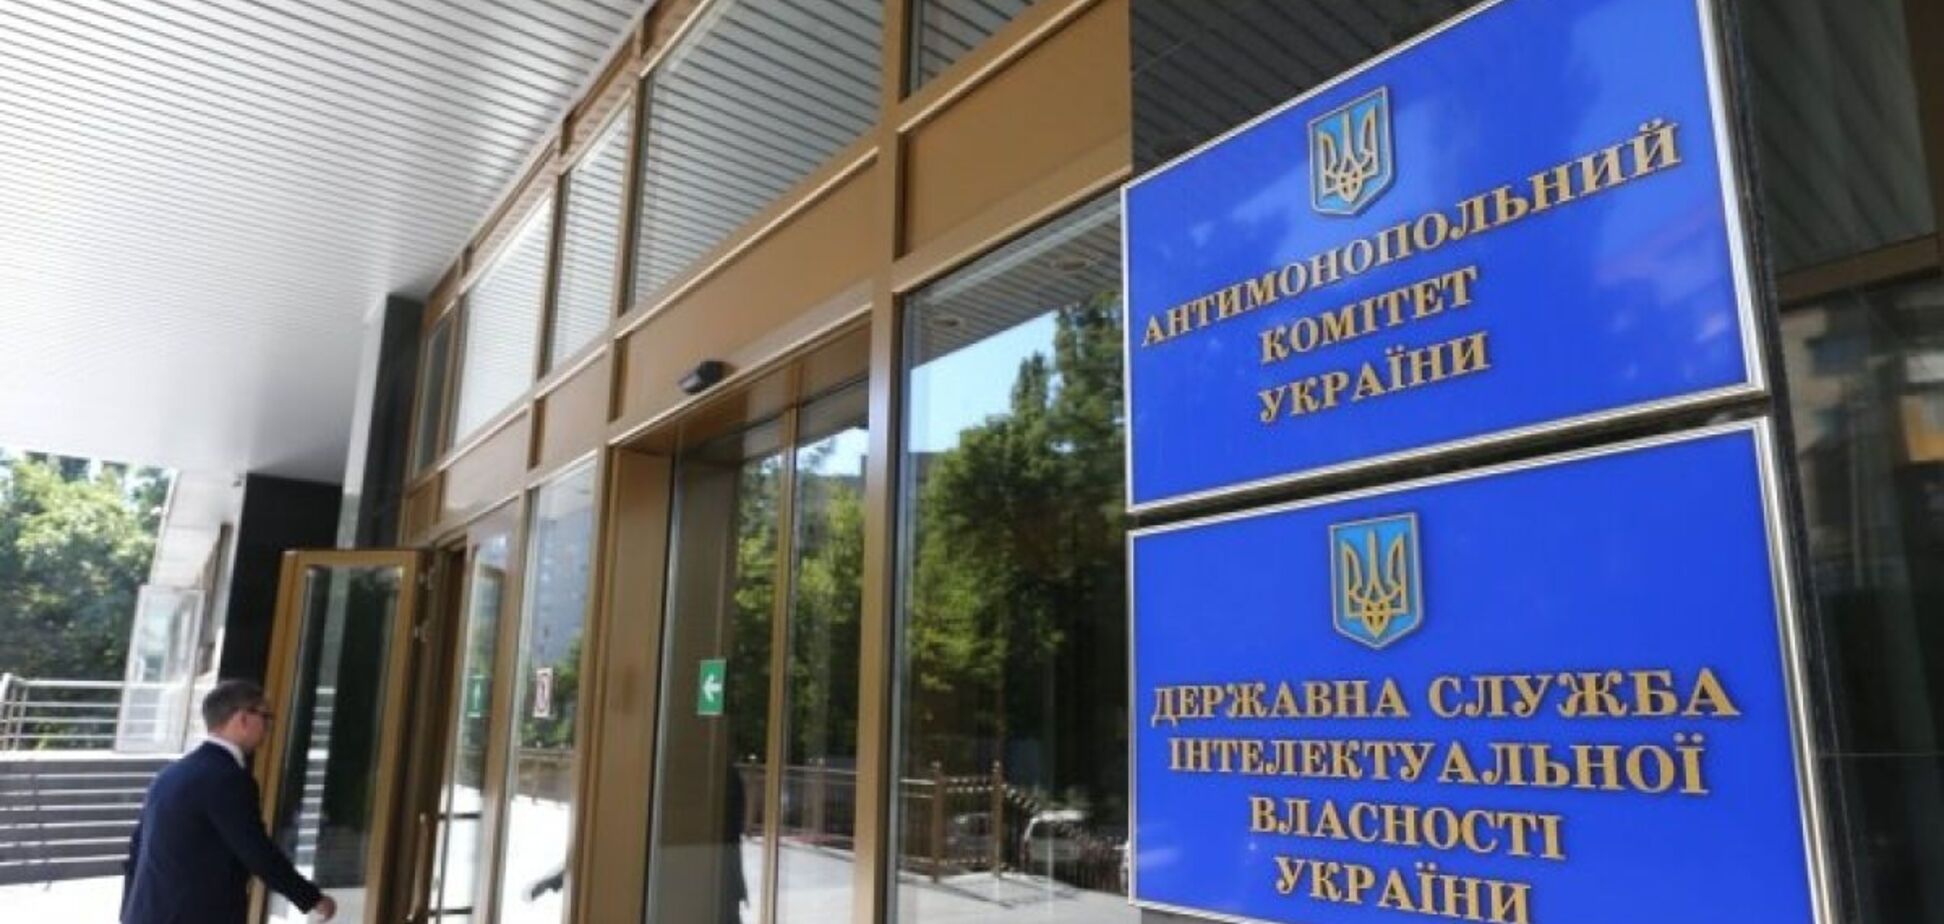 Антимонопольна реформа може врятувати економіку України, – адвокат